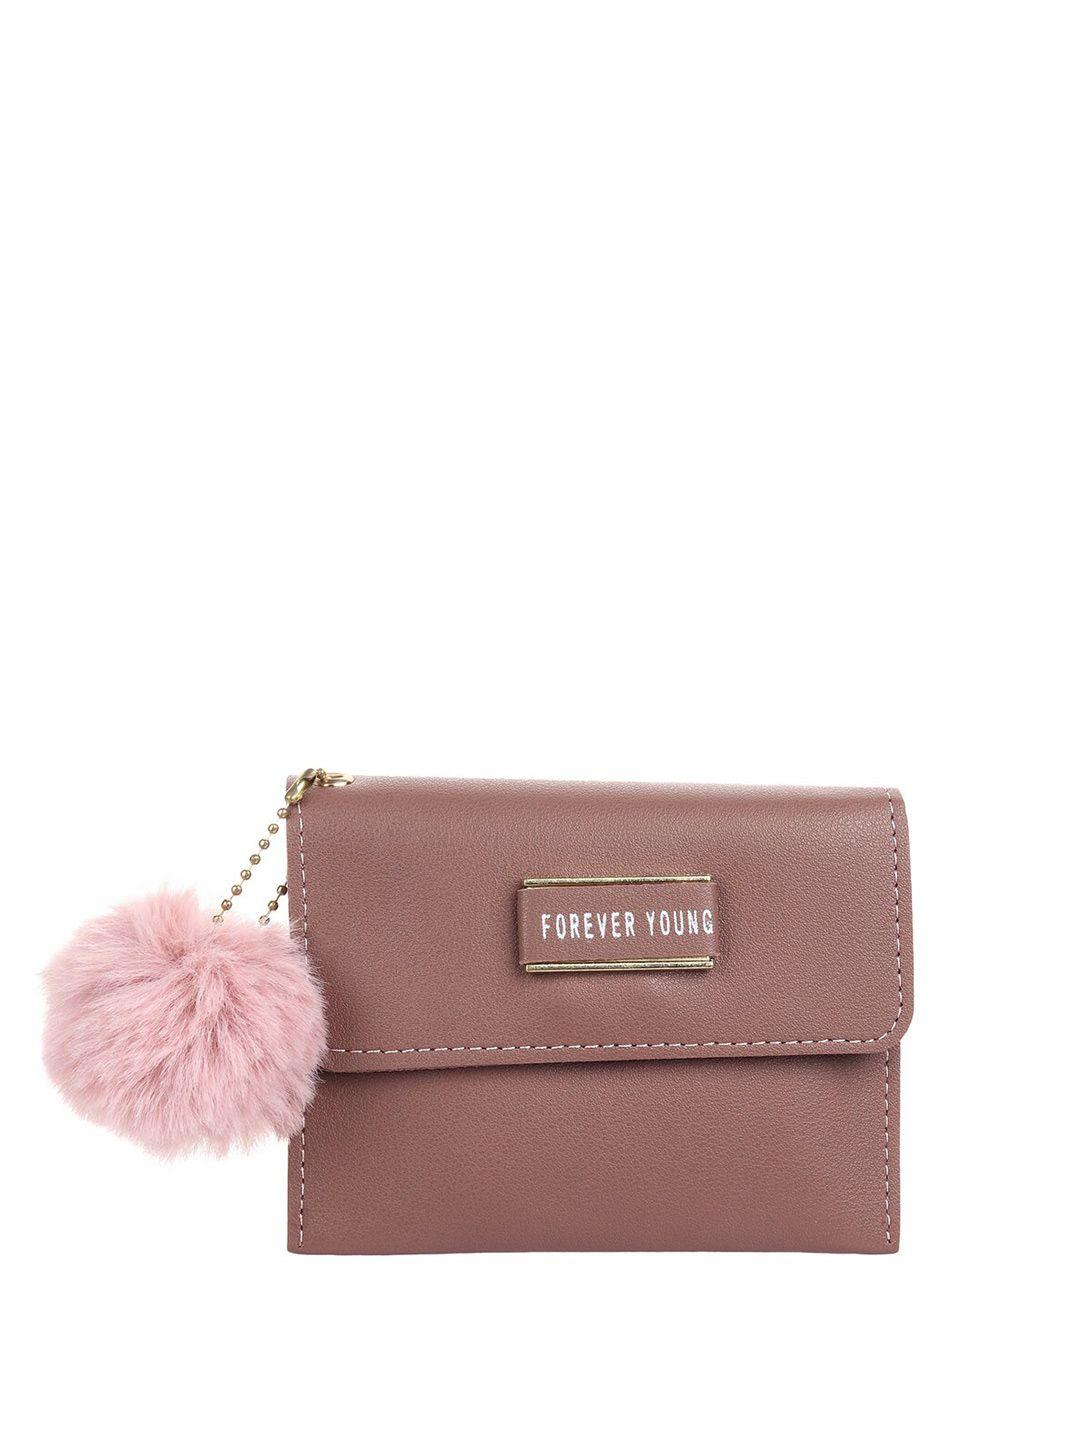 dressberry-women-envelope-wallet